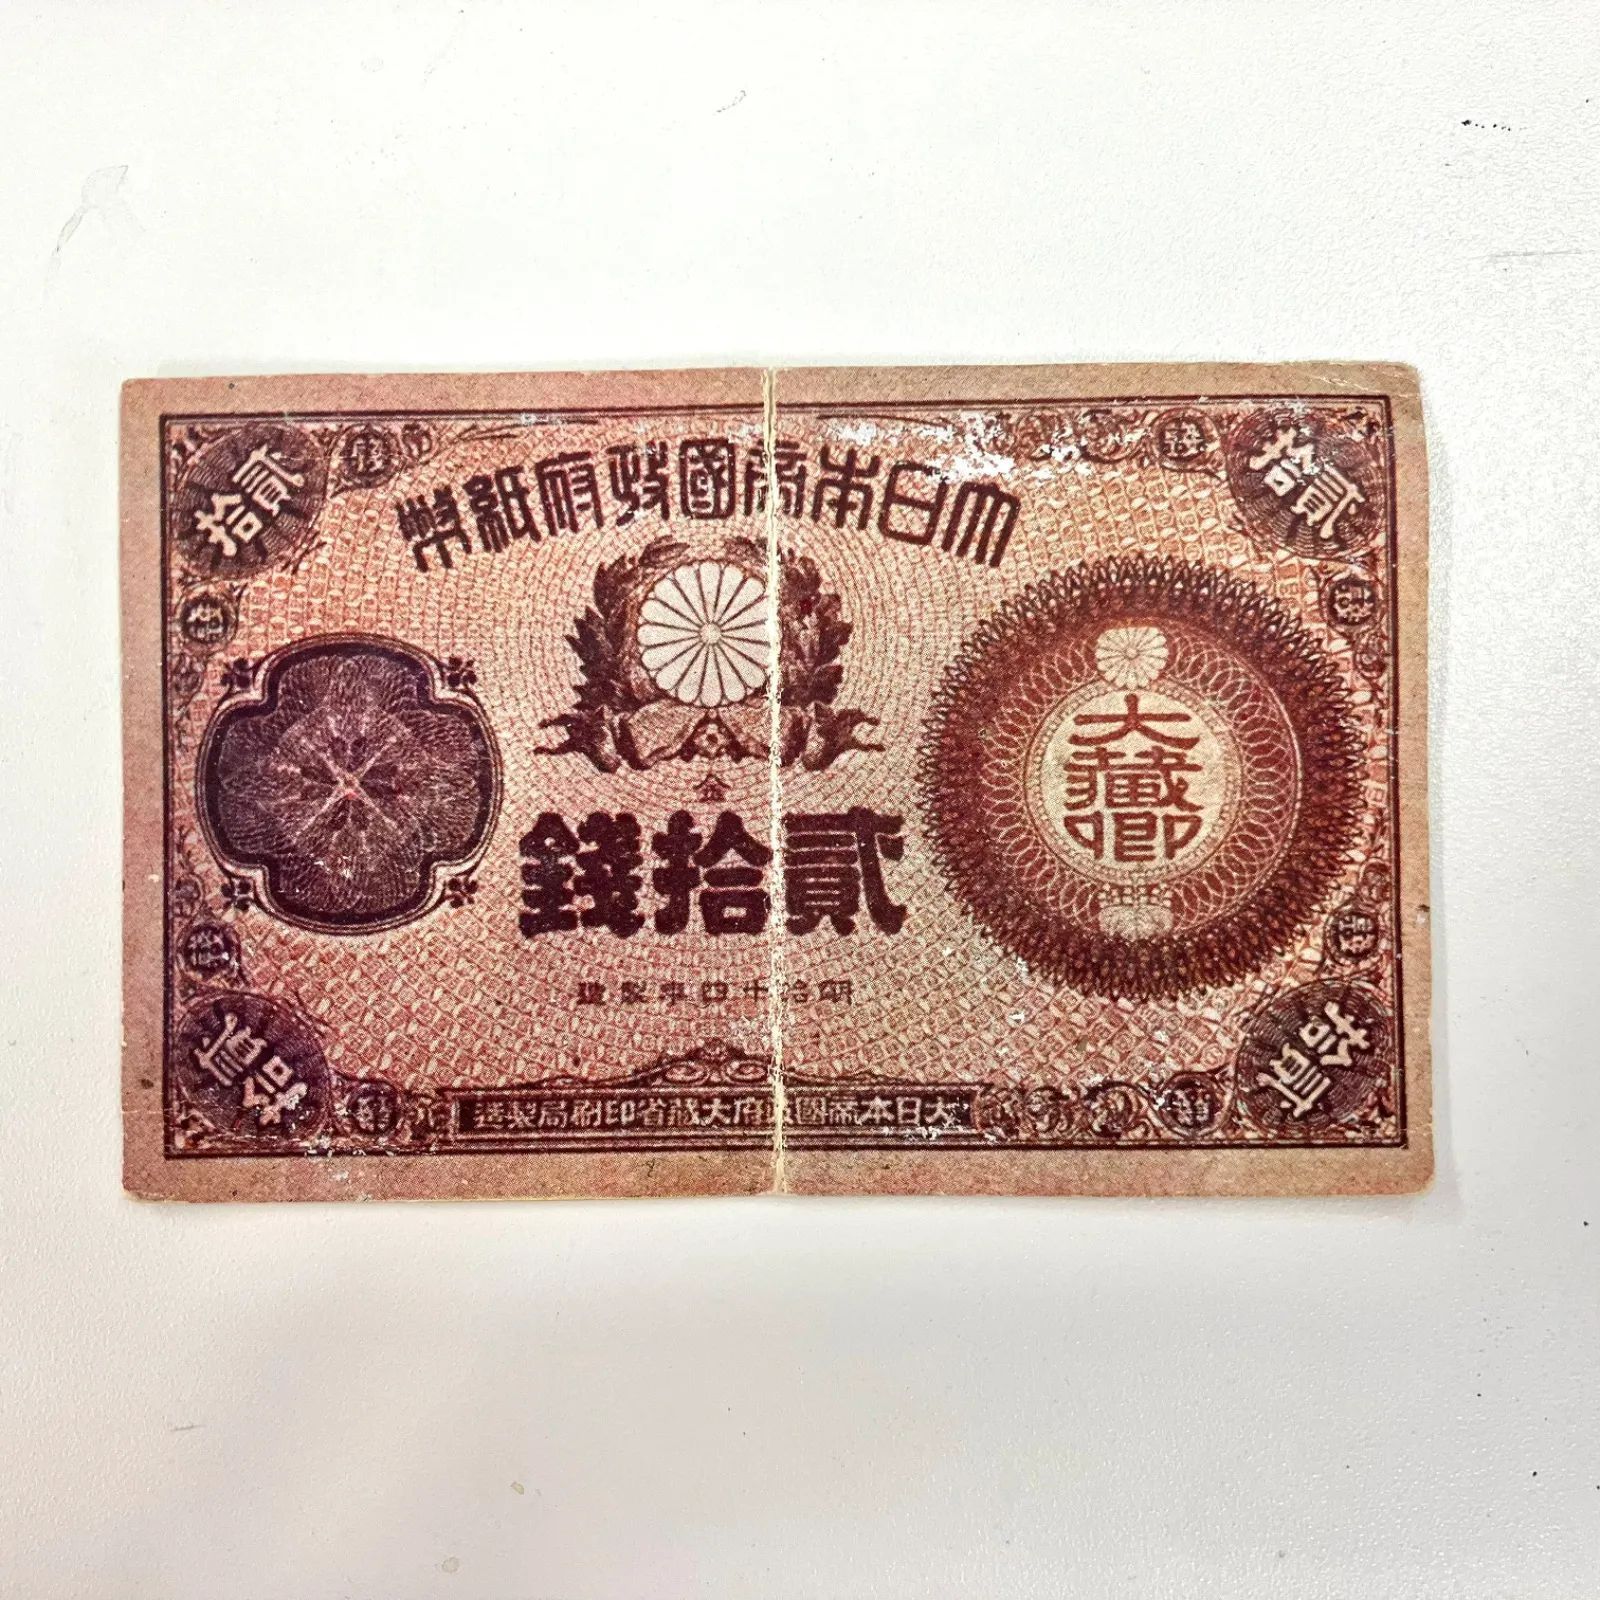 改造紙幣 20銭 大蔵卿 二十銭 貮拾銭 明治14年製造 古紙幣 古銭 紙幣